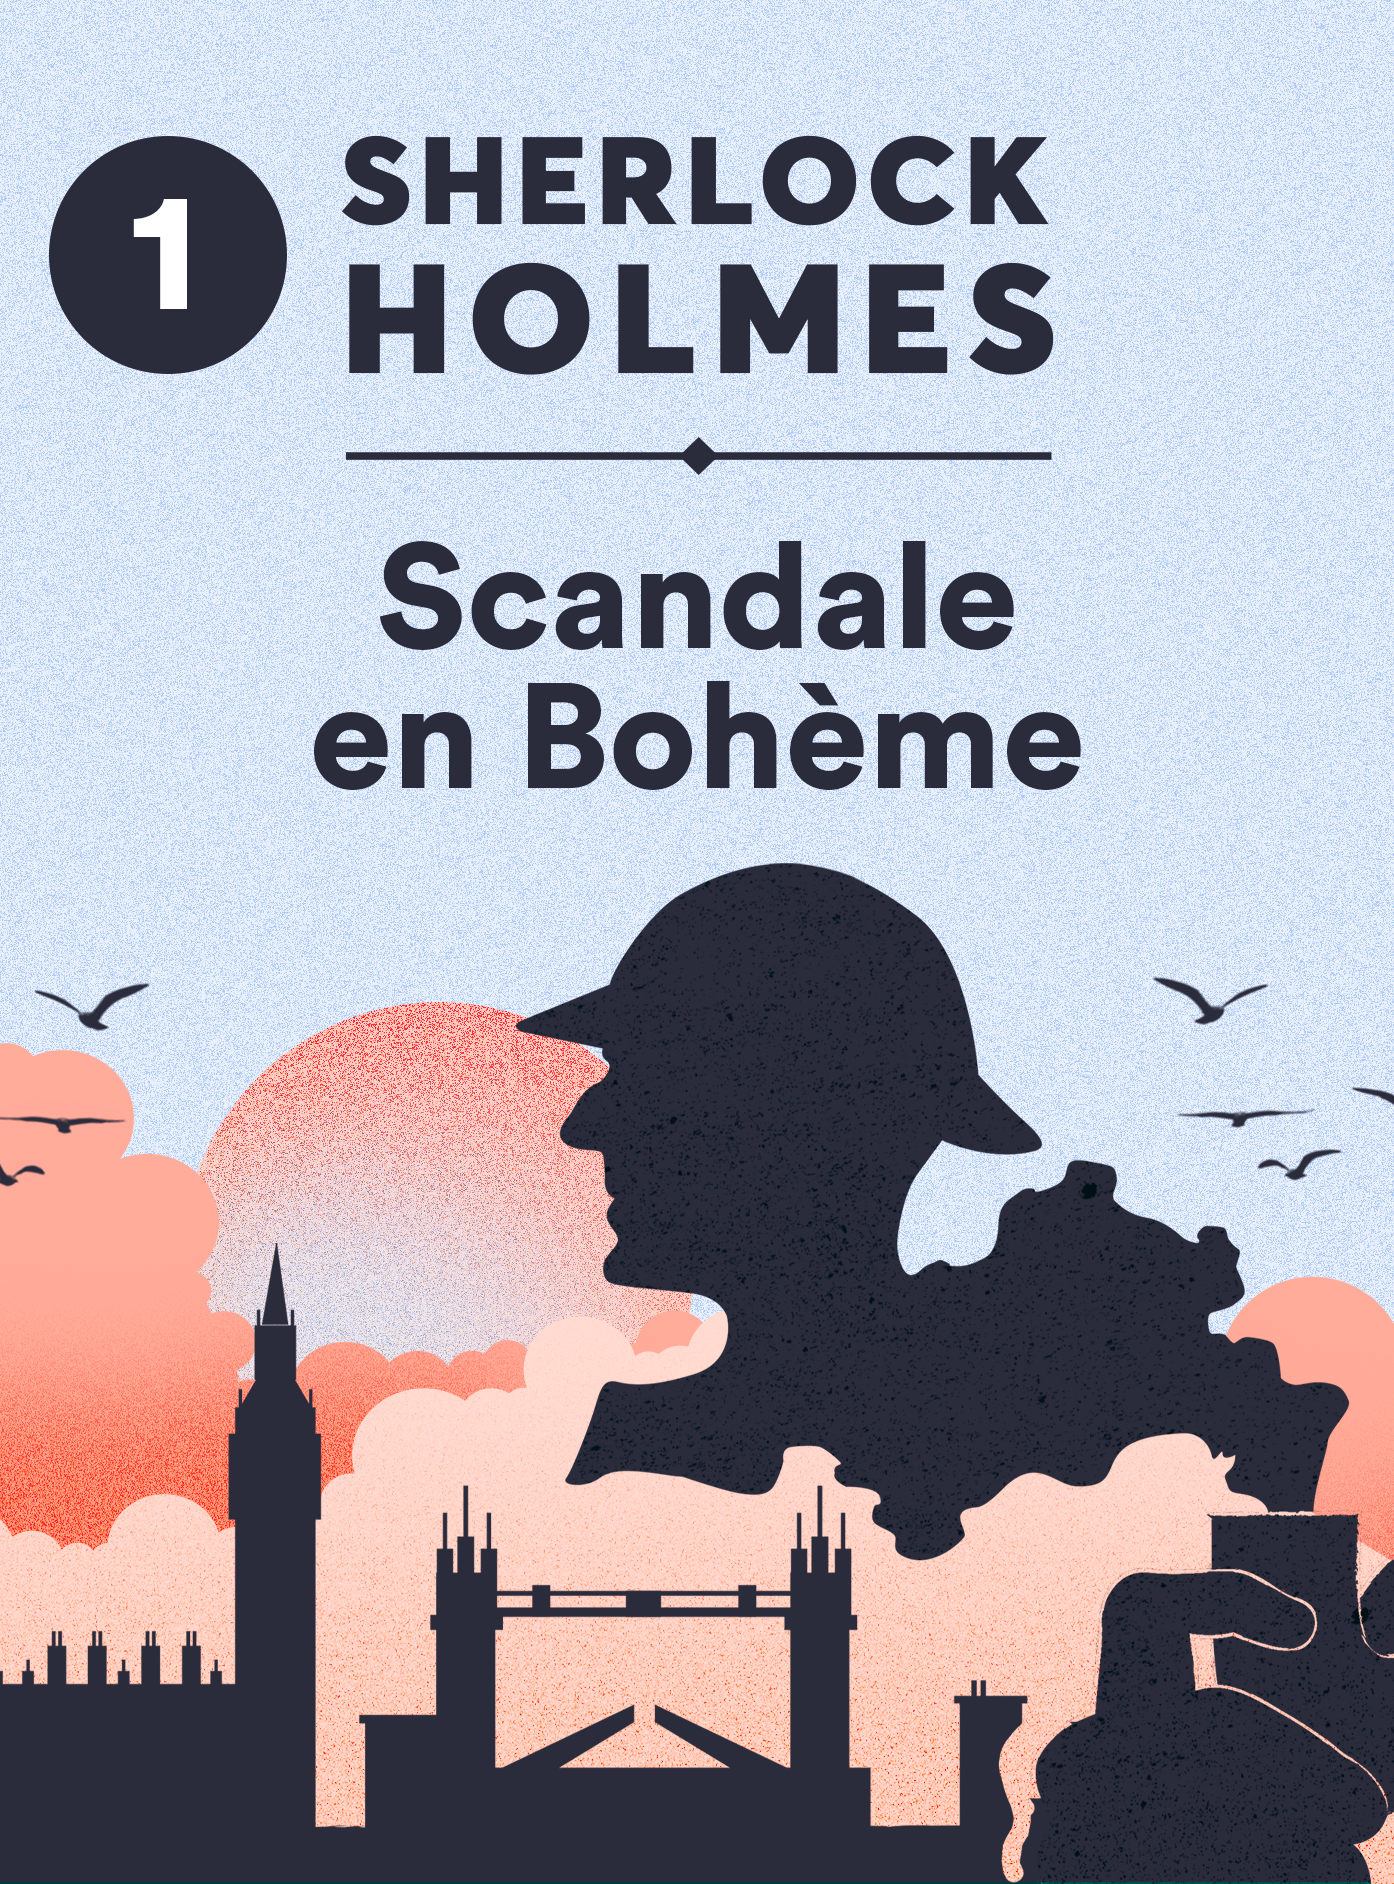 Sherlock Holmes, scandale en bohème